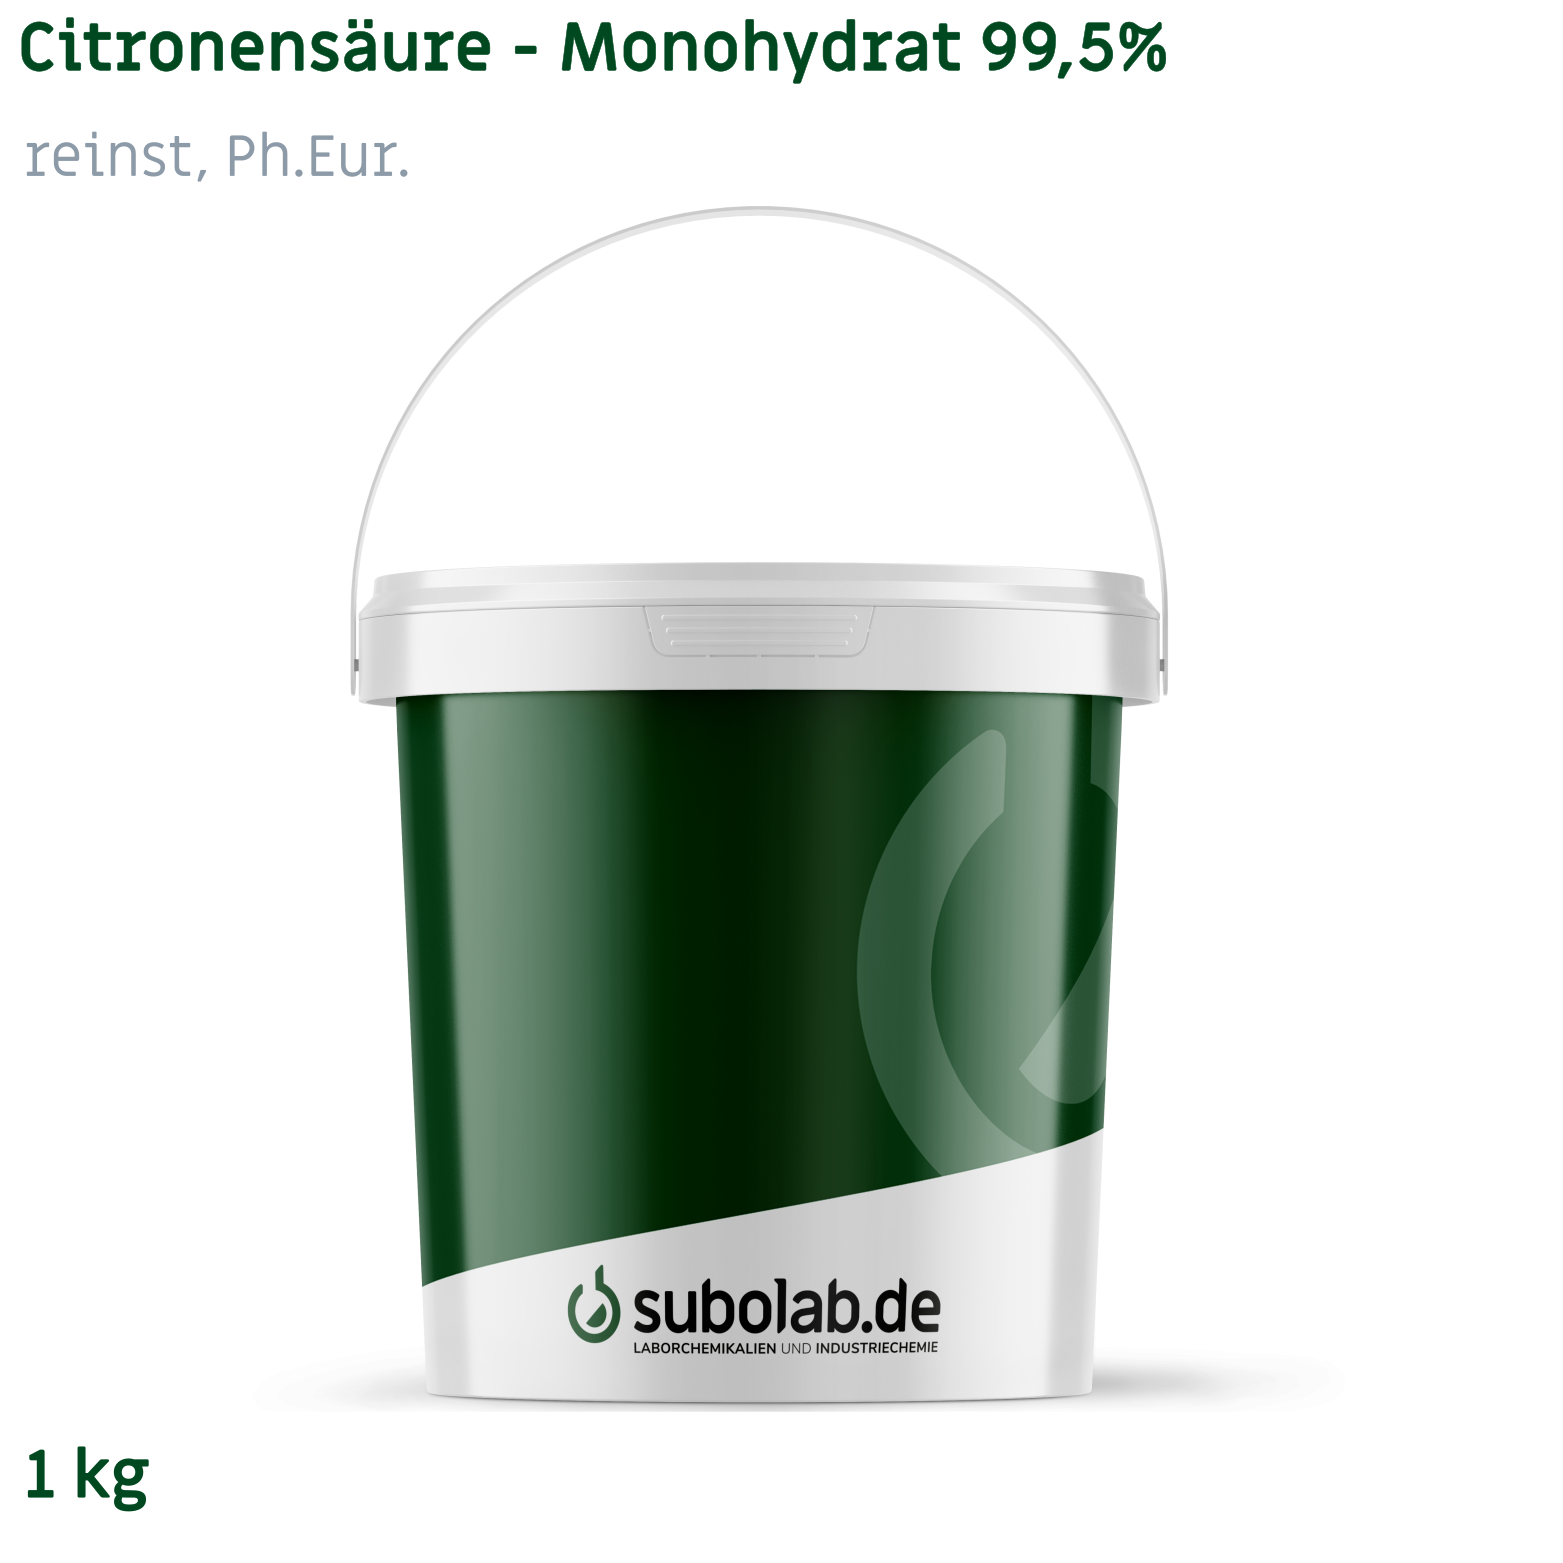 Bild von Citronensäure - Monohydrat 99,5% reinst, Ph.Eur. (1 kg)